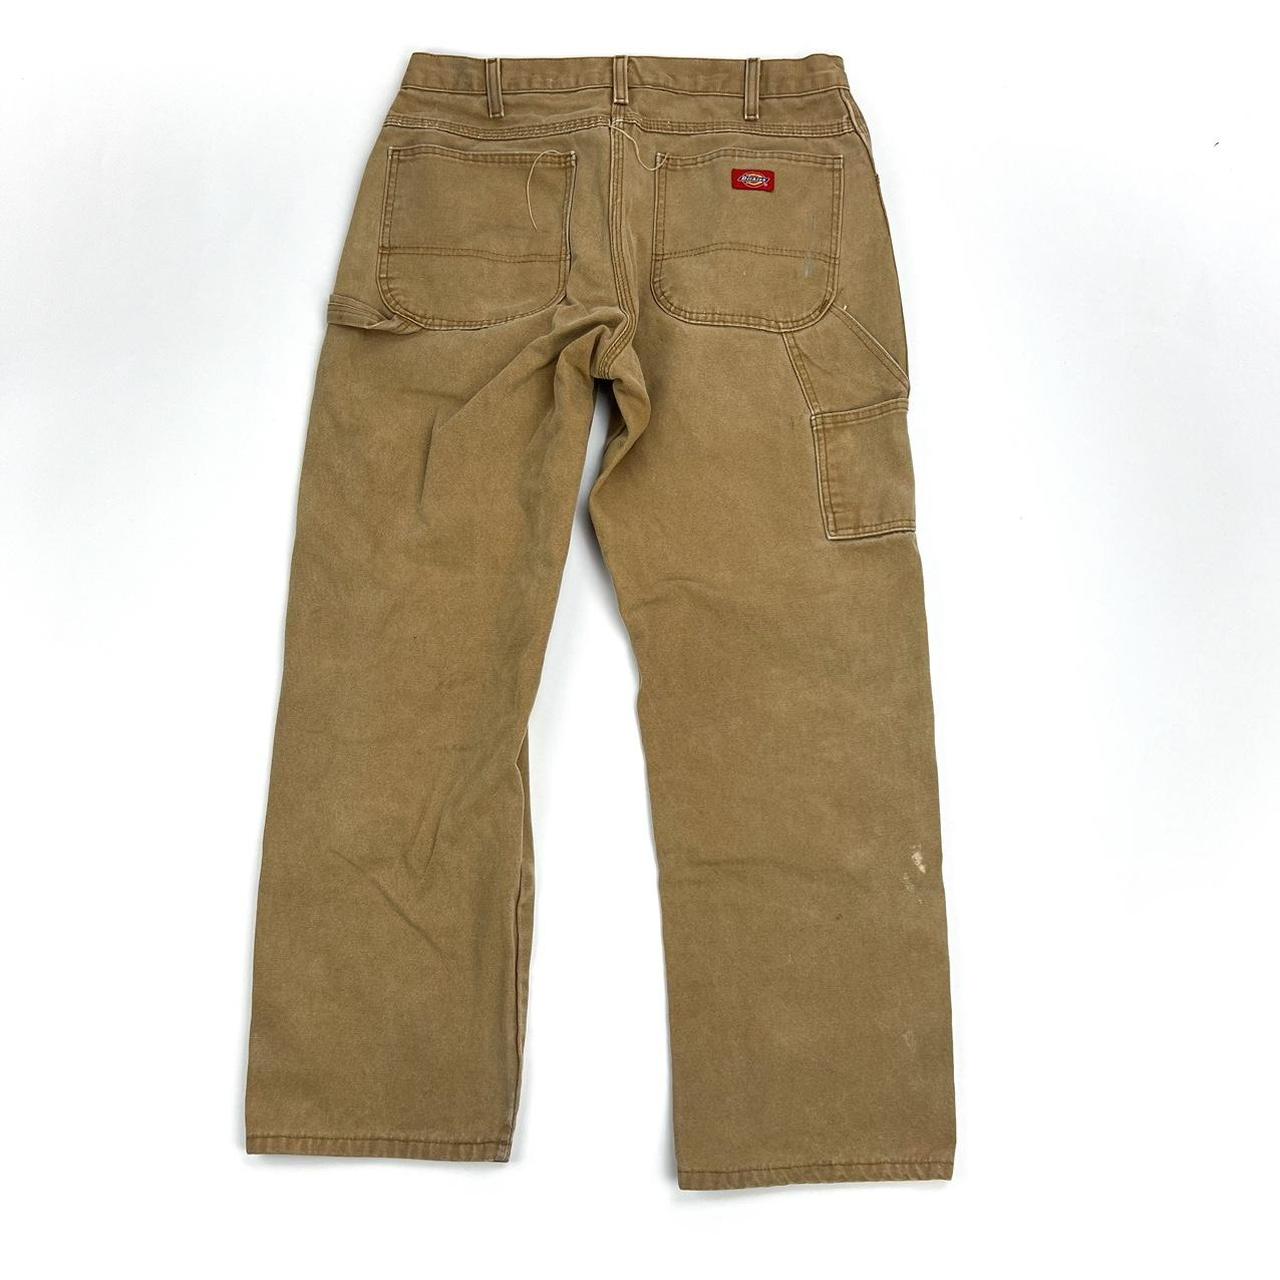 Dickies carpenter pants | Size 34x30 | Nice tan color - Depop